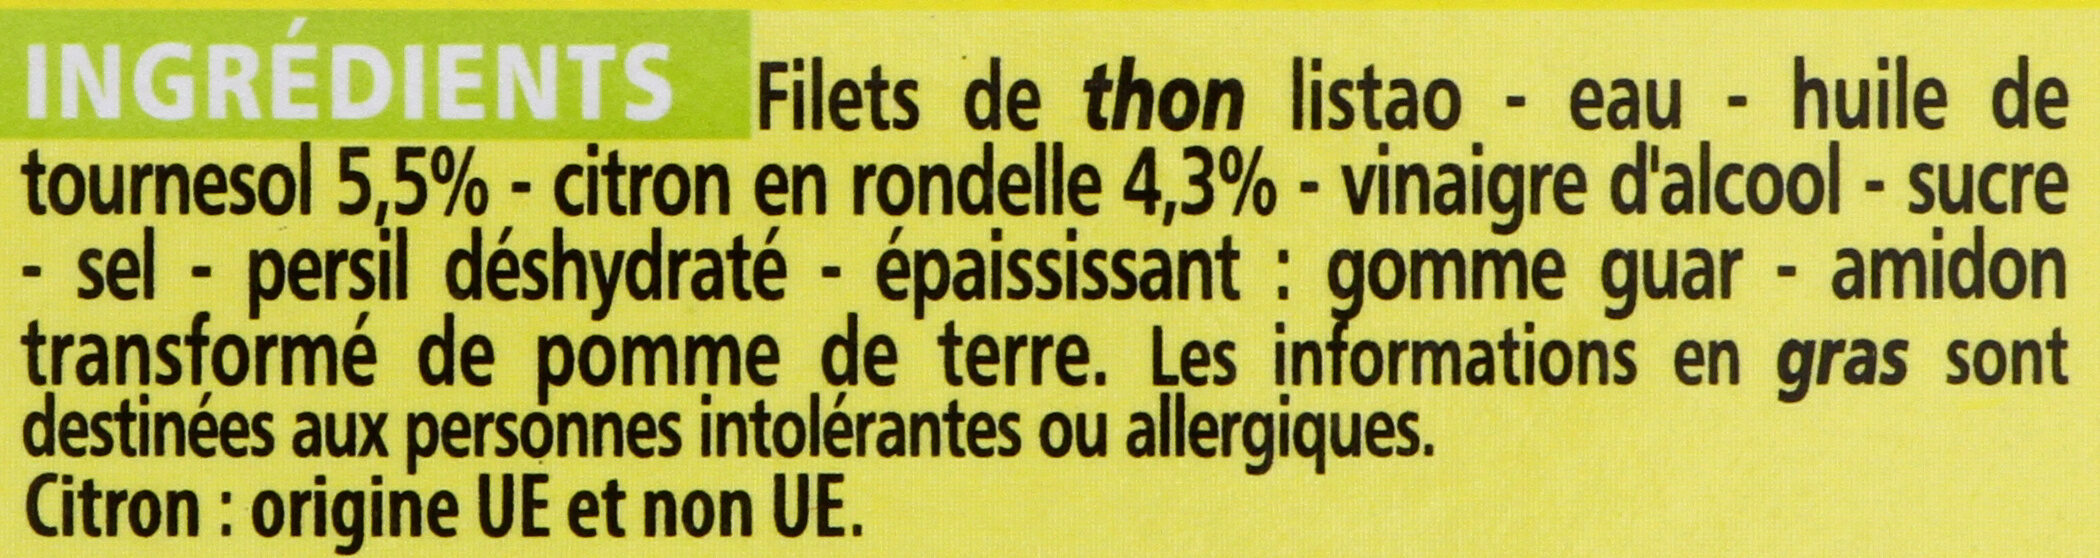 Filets de thon au citron - Ingrédients